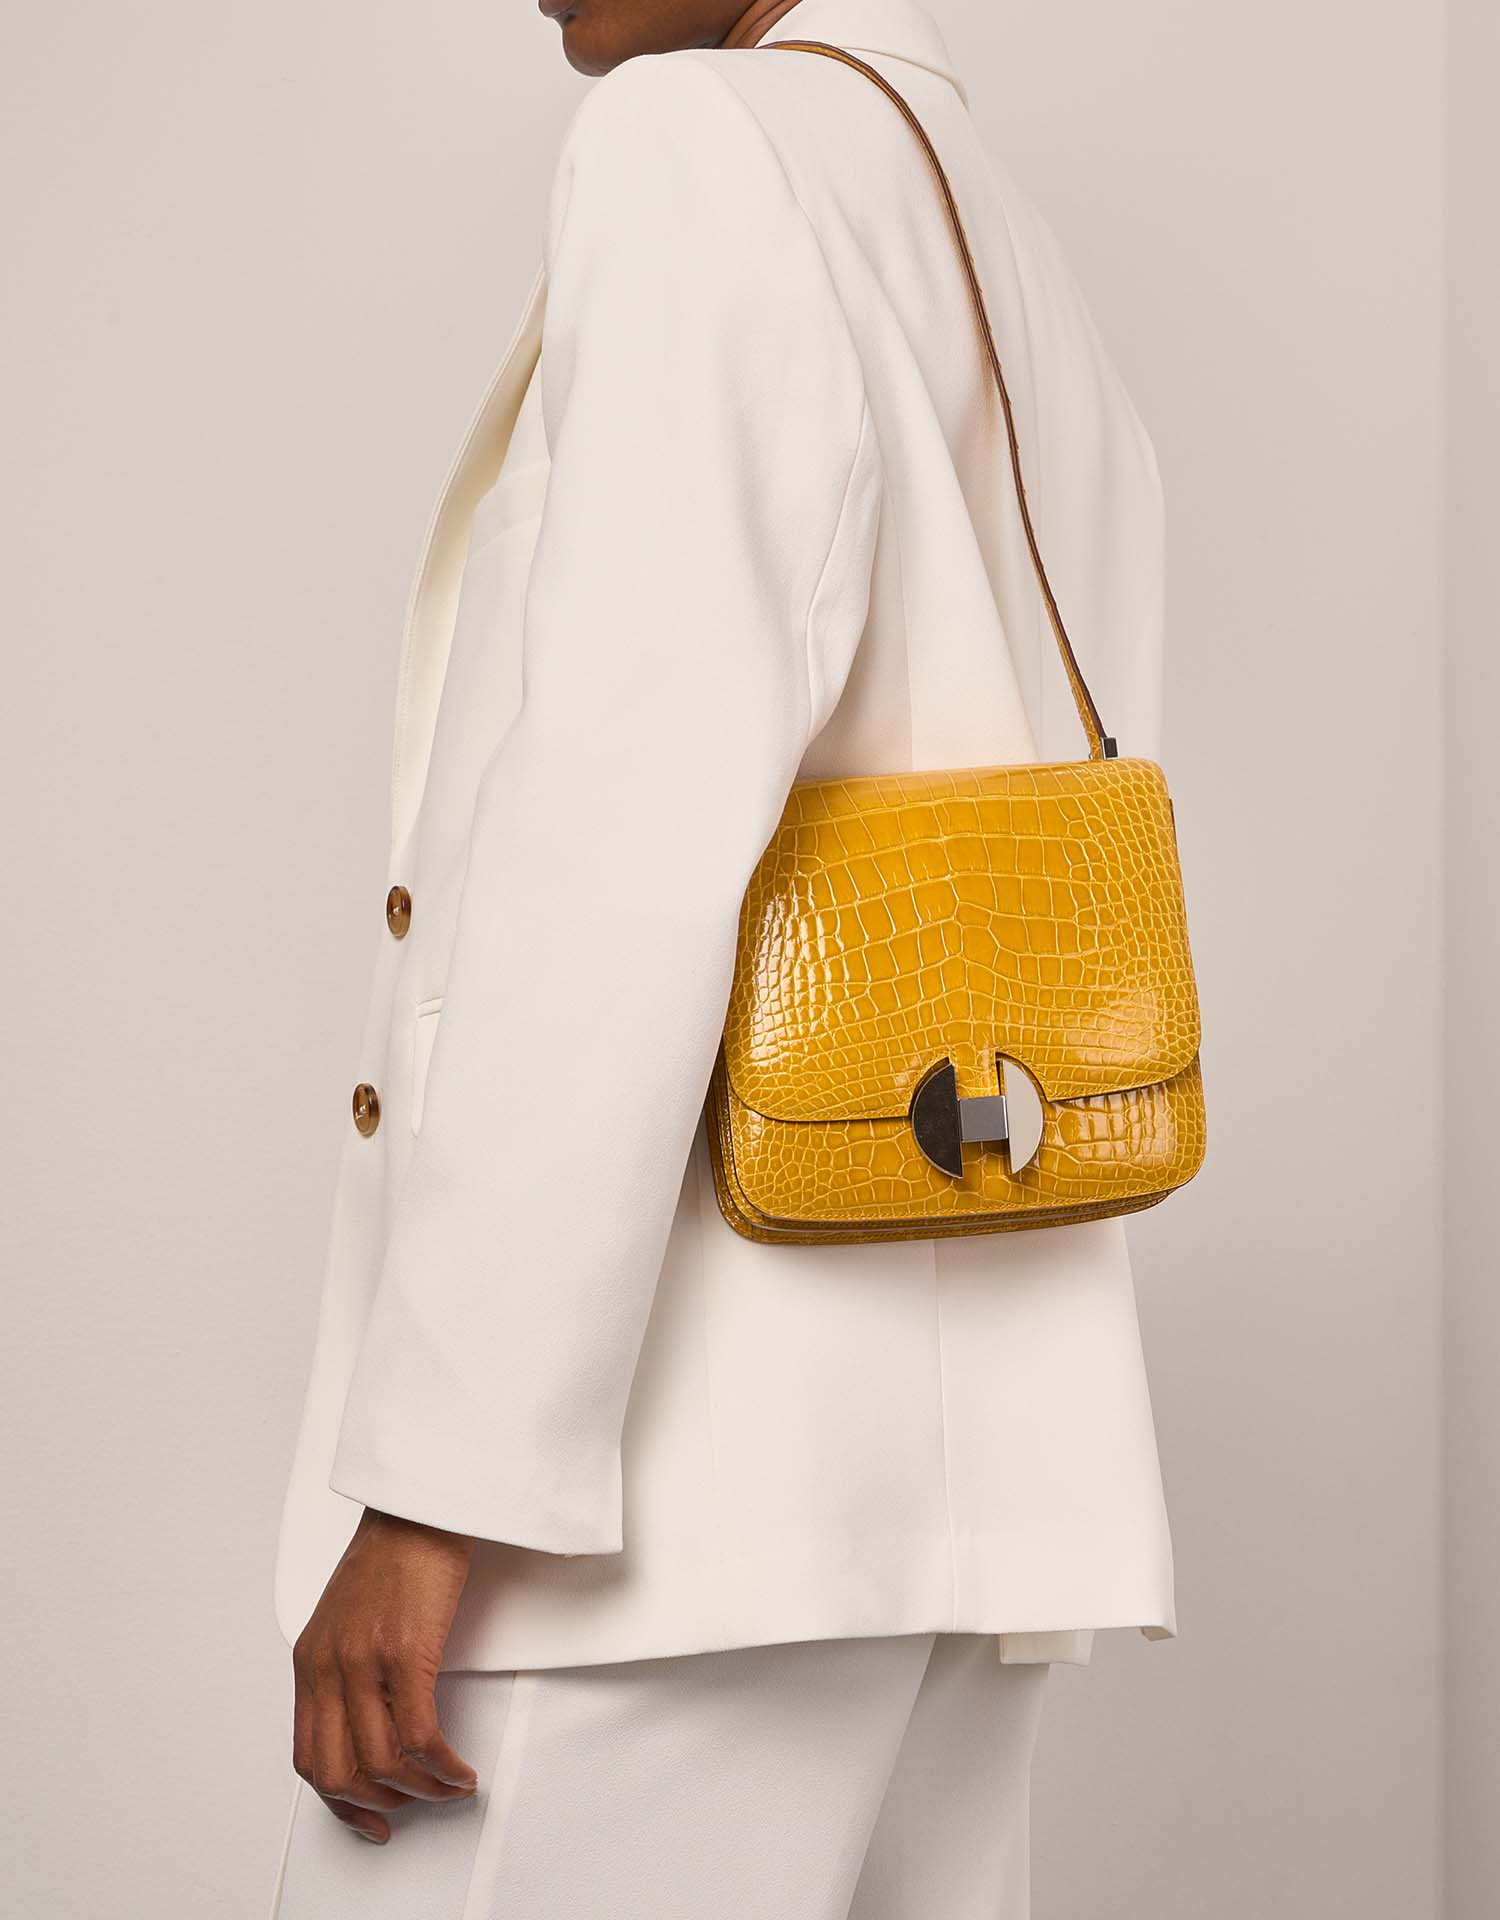 Hermès 20 JauneAmbre Größen Getragen | Verkaufen Sie Ihre Designer-Tasche auf Saclab.com